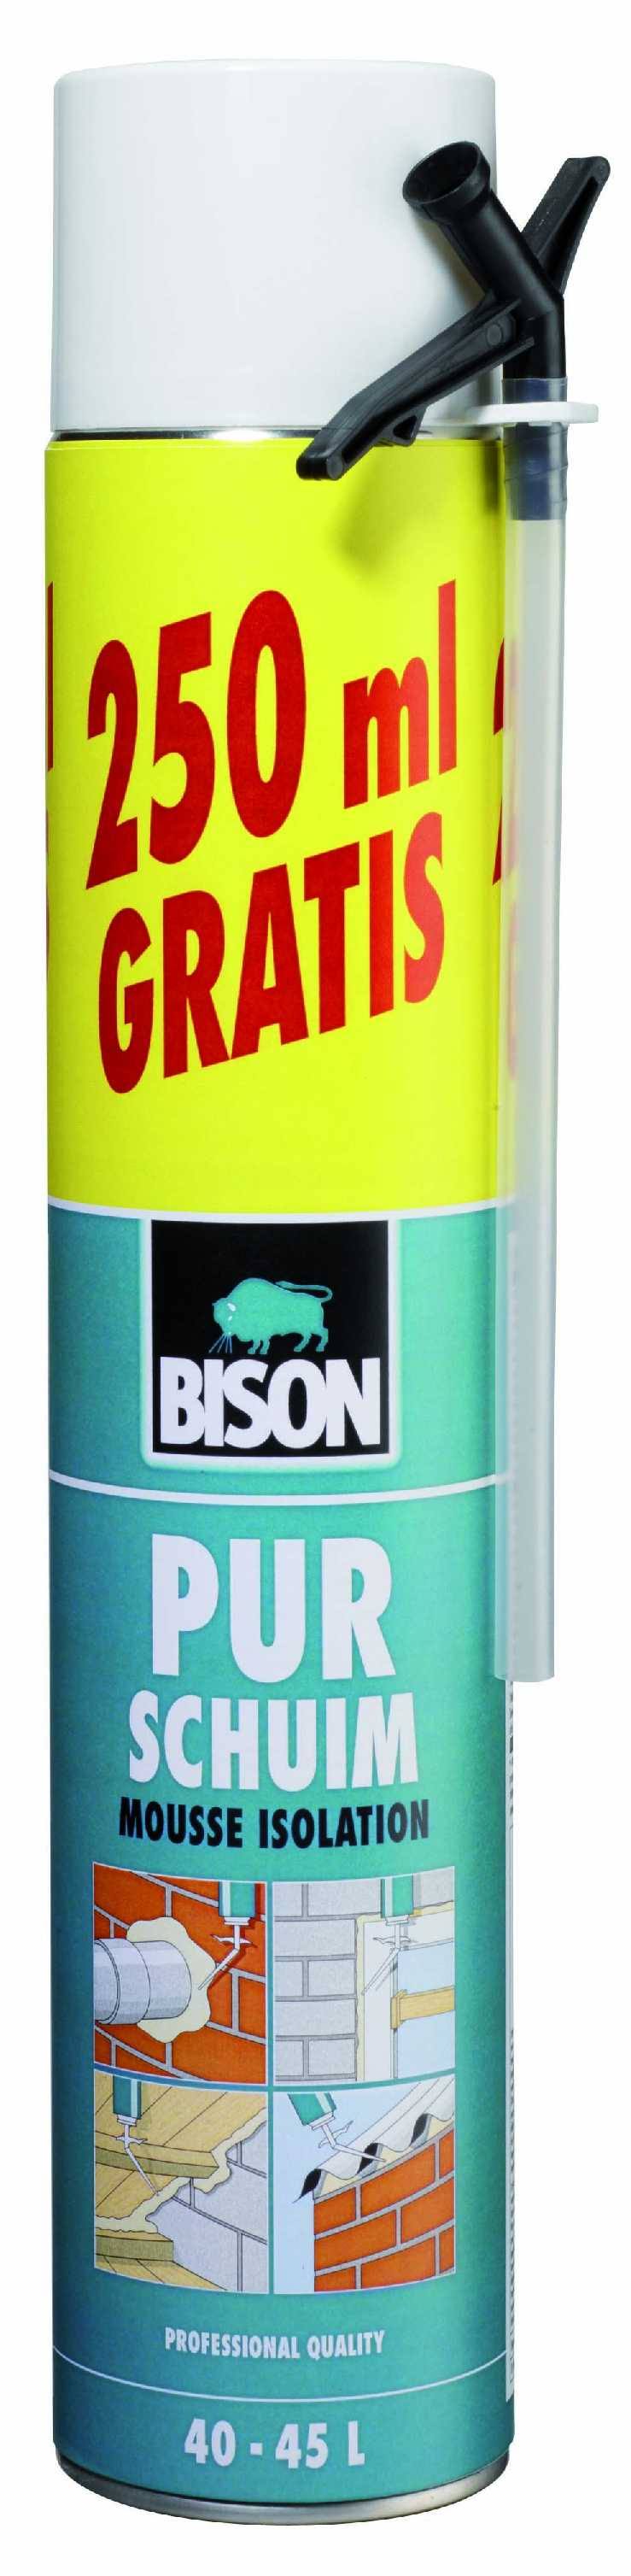 Bison Purschuim 750 ml